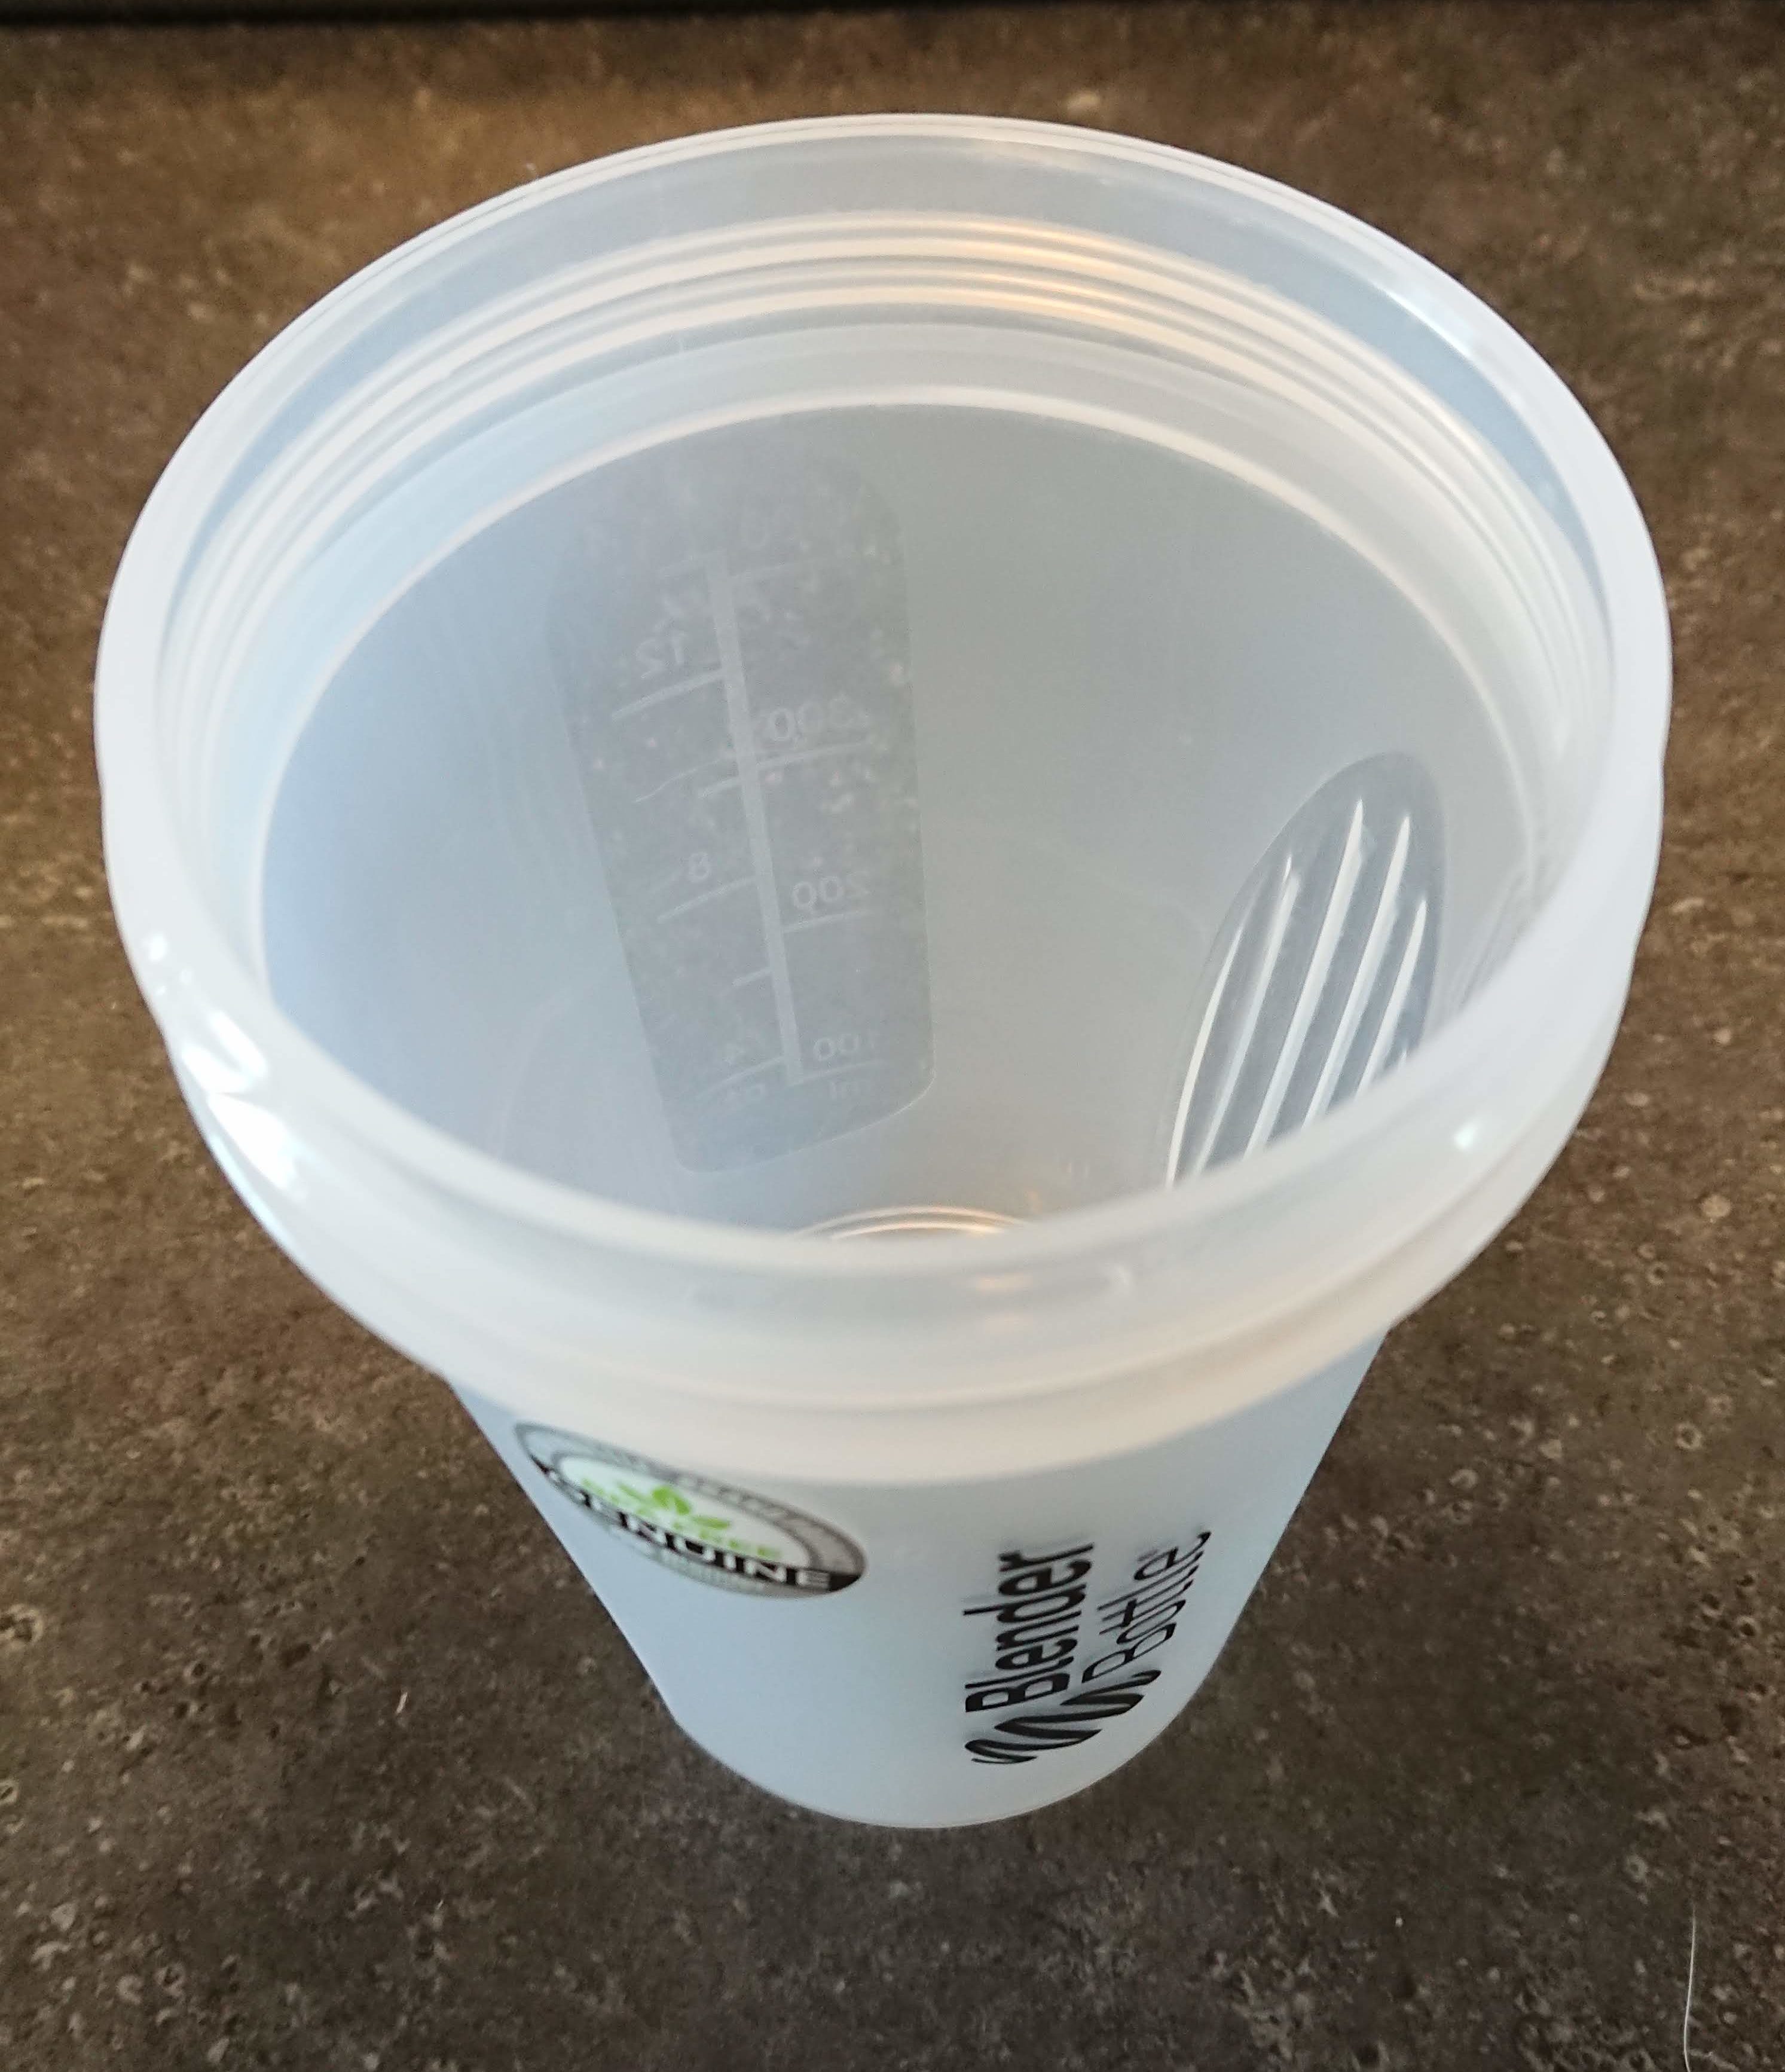 プラスチックのコップが臭い・・・臭いを取る方法とは